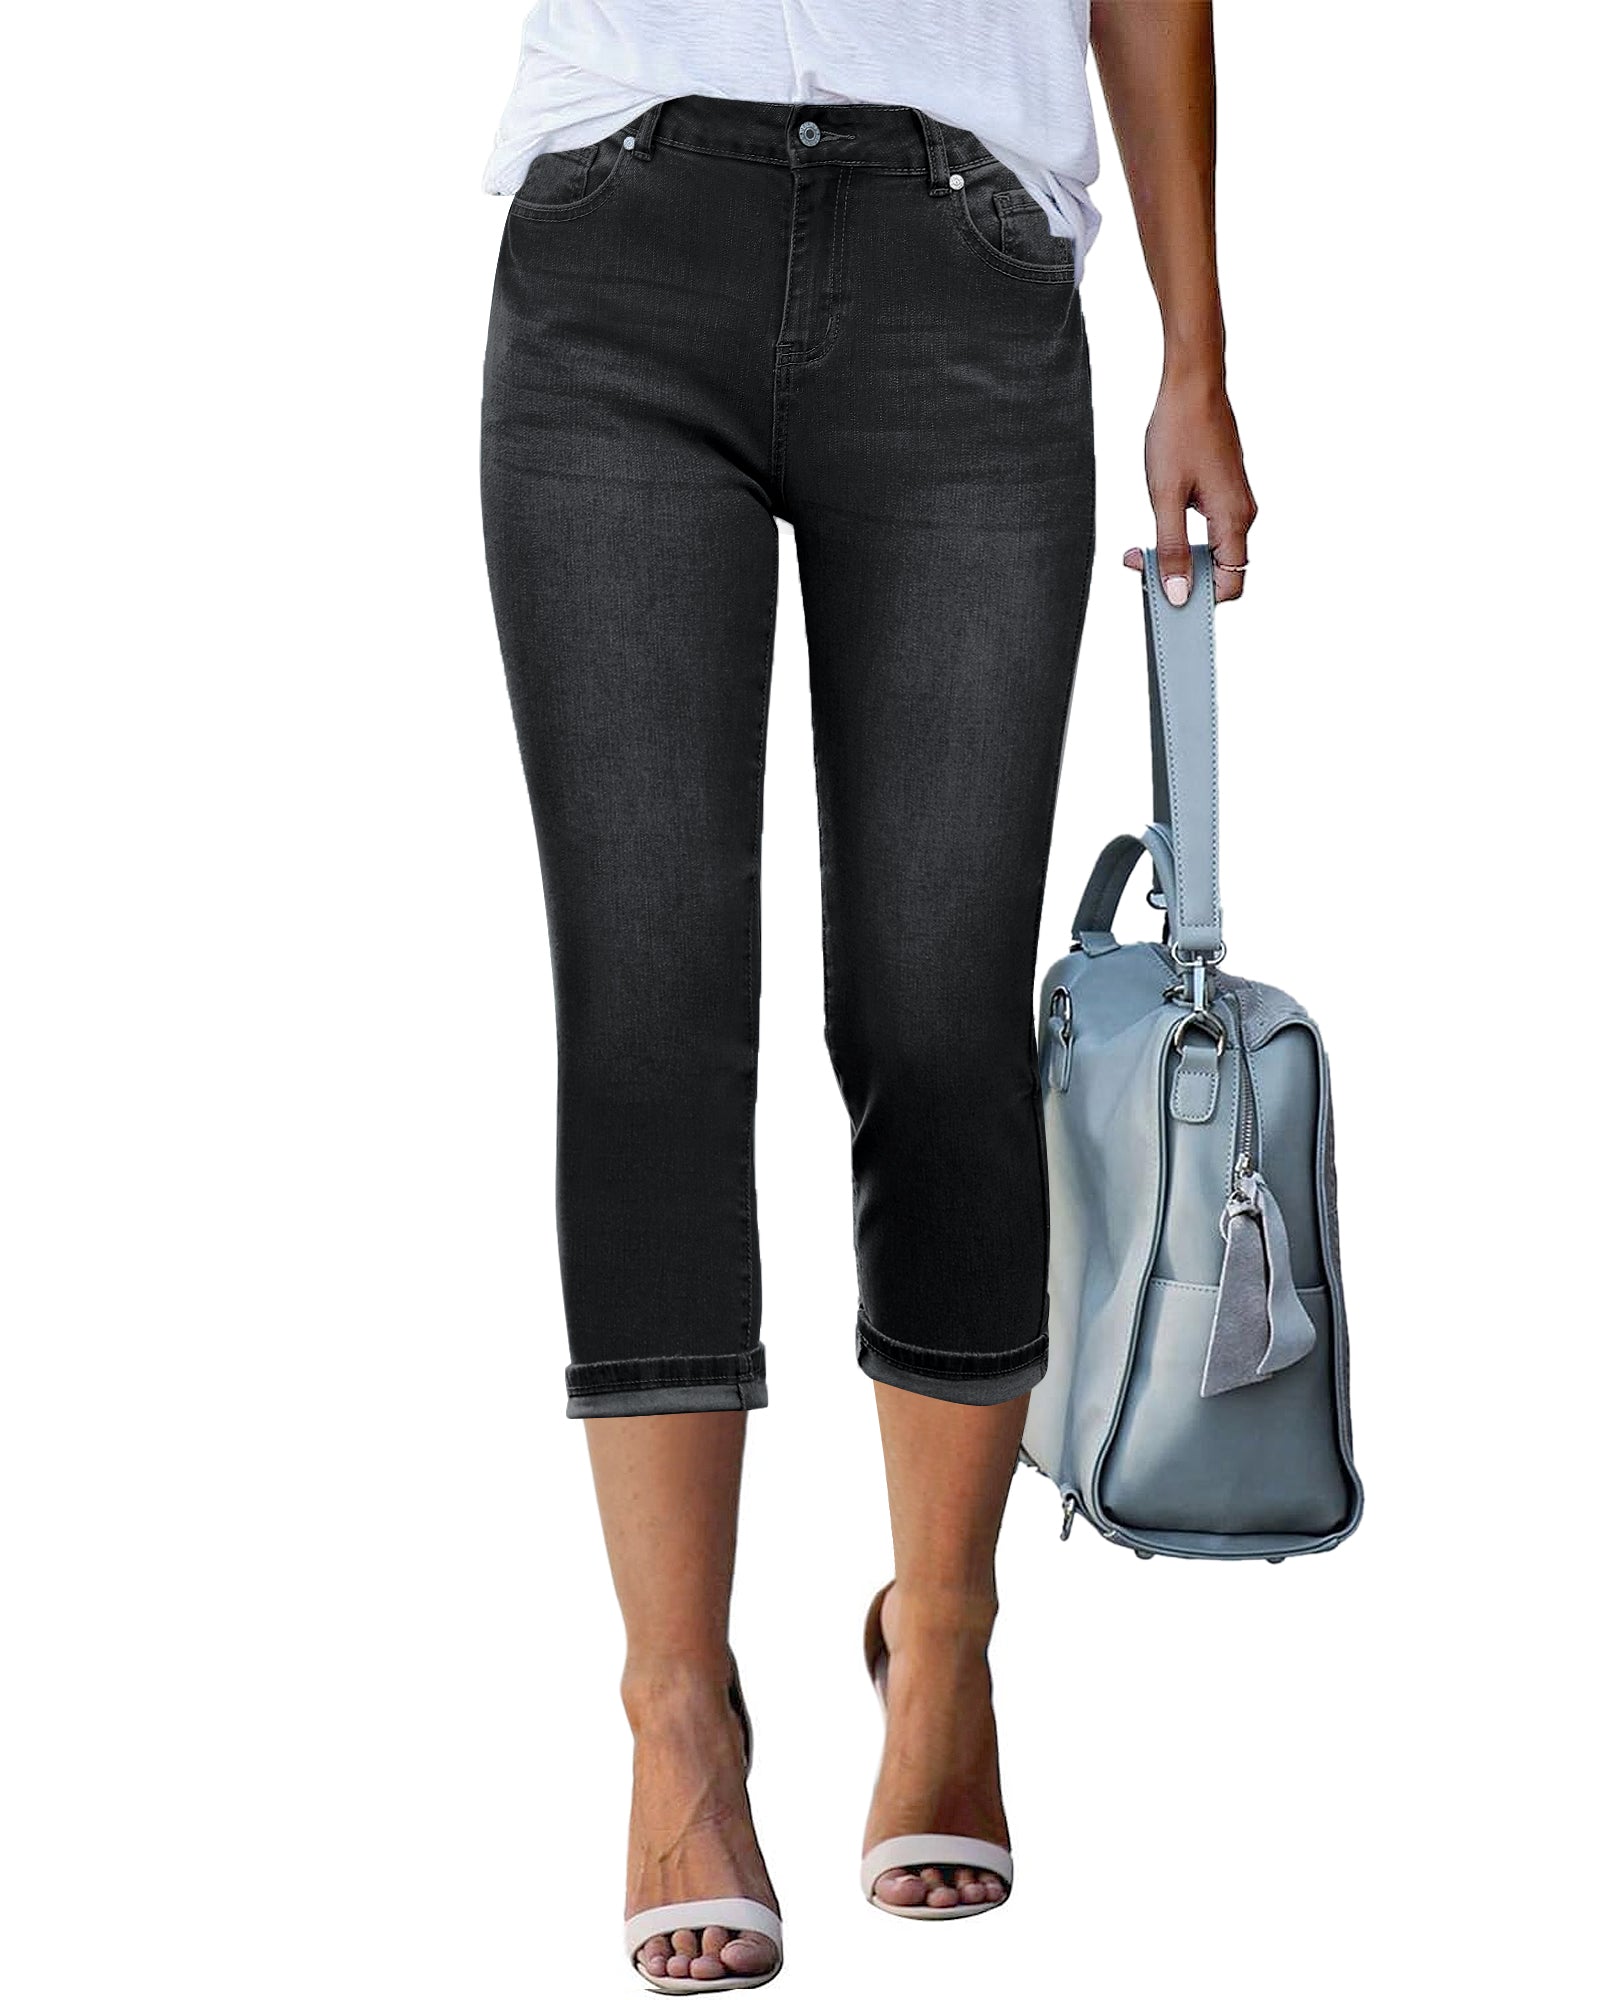 GRAPENT Capris Jeans for Women High Waisted Skinny Stretchy Denim Capr –  Grapent